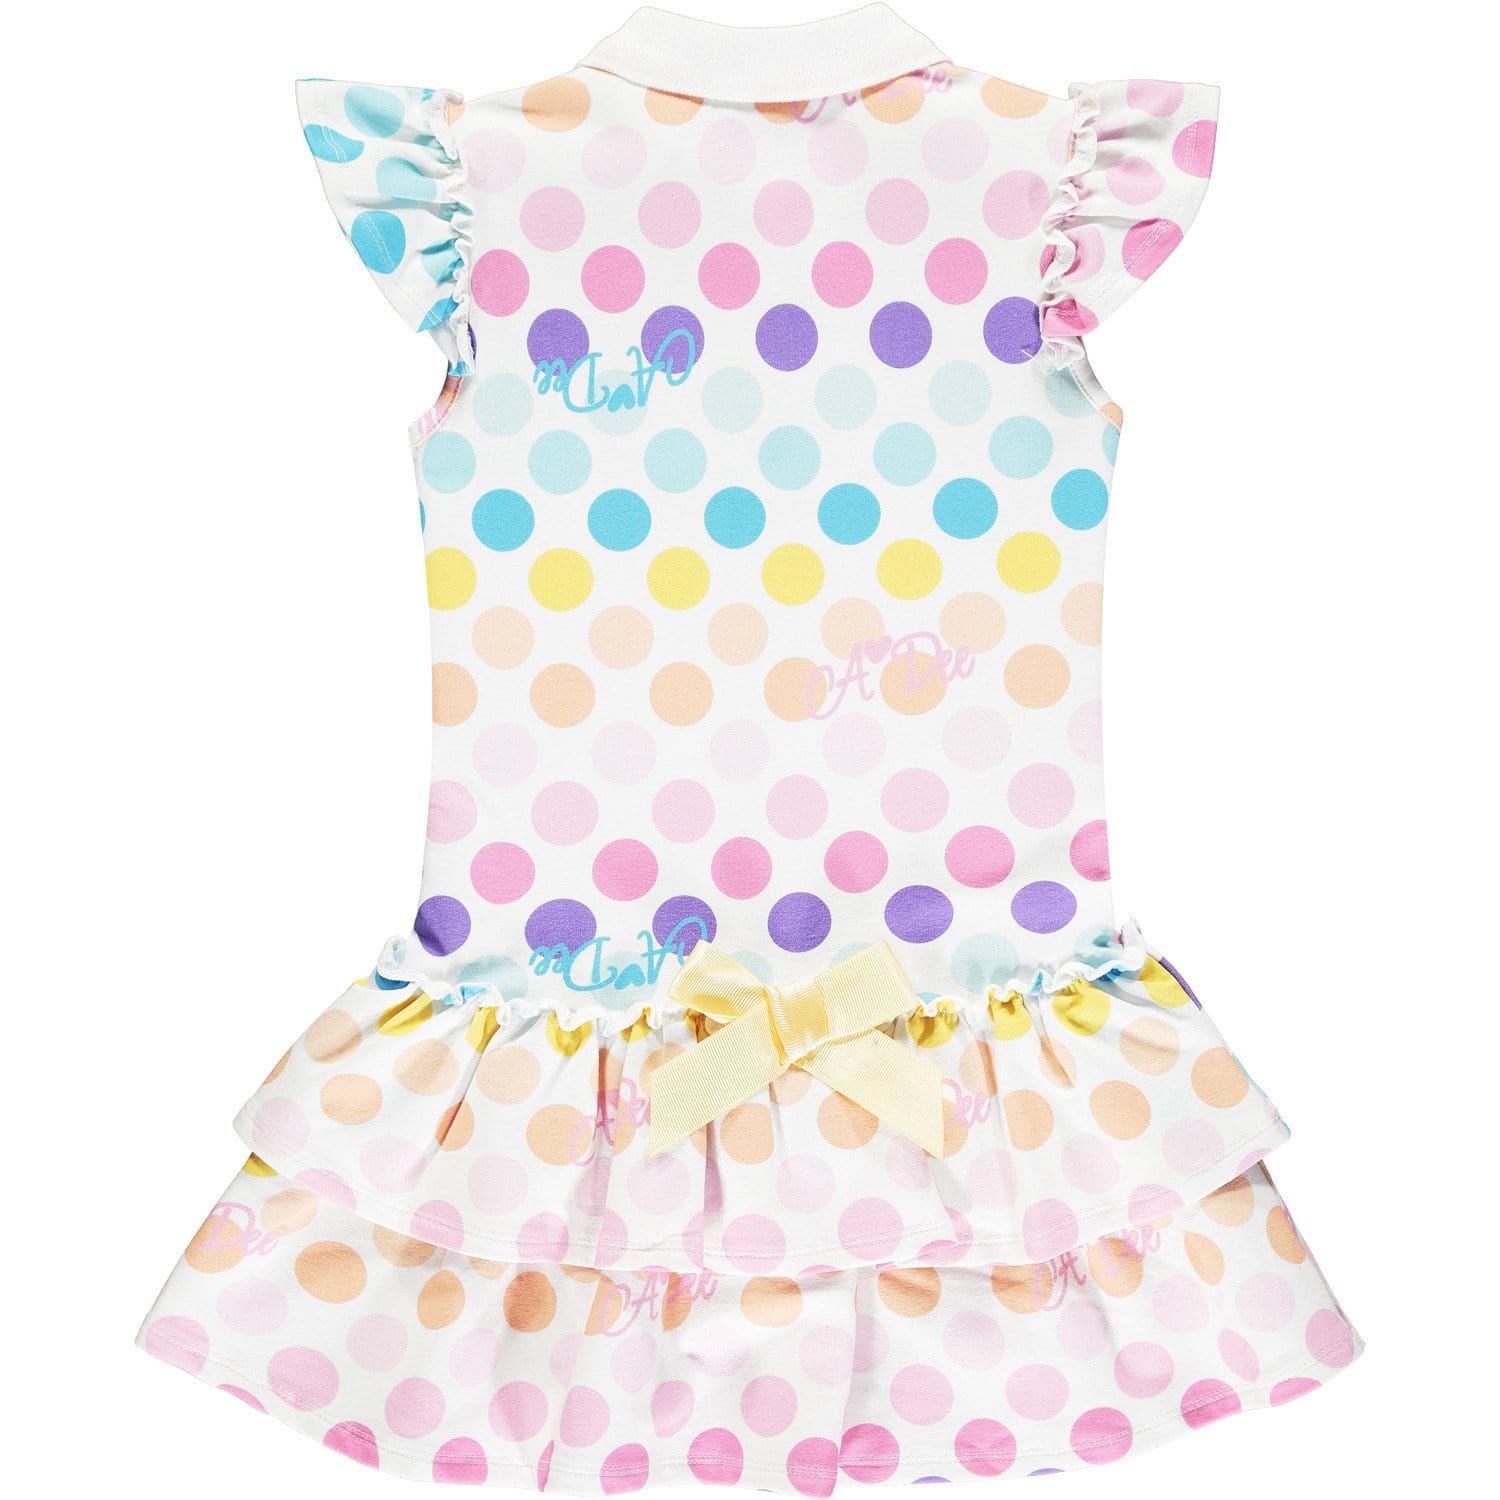 A DEE - Polka Dot Tennis Dress - White/Pink/Blue